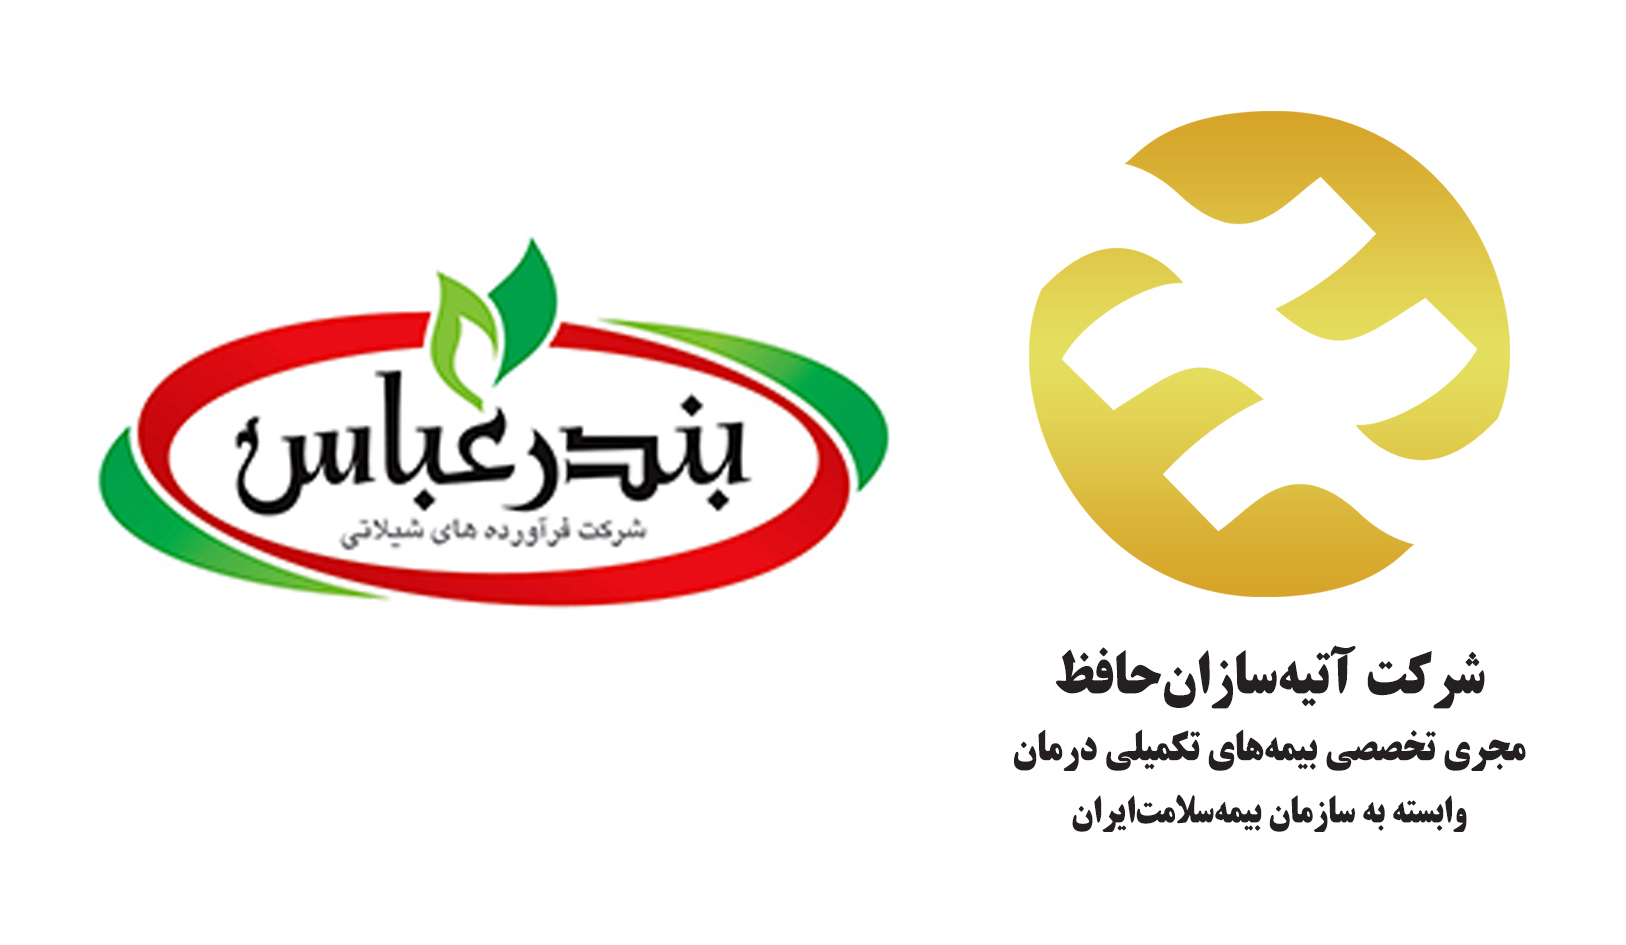 کارکنان شرکت فرآورده های شیلاتی استان هرمزگان تحت پوشش بیمه تکمیلی آتیه سازان حافظ 